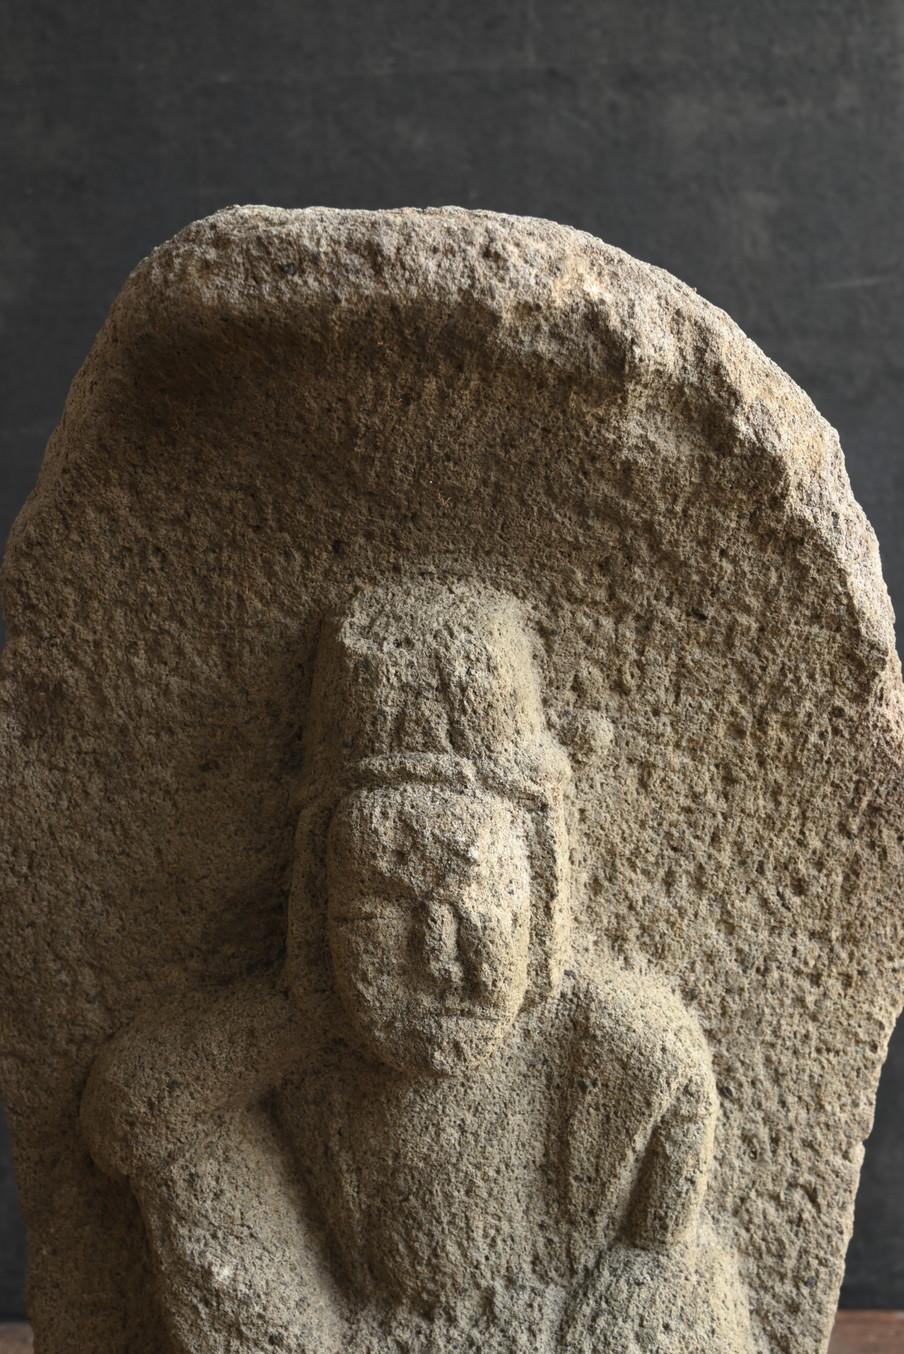 Hand-Carved Japanese antique stone Buddha “Nyoirin Kannon”/1750-1850/Edo period